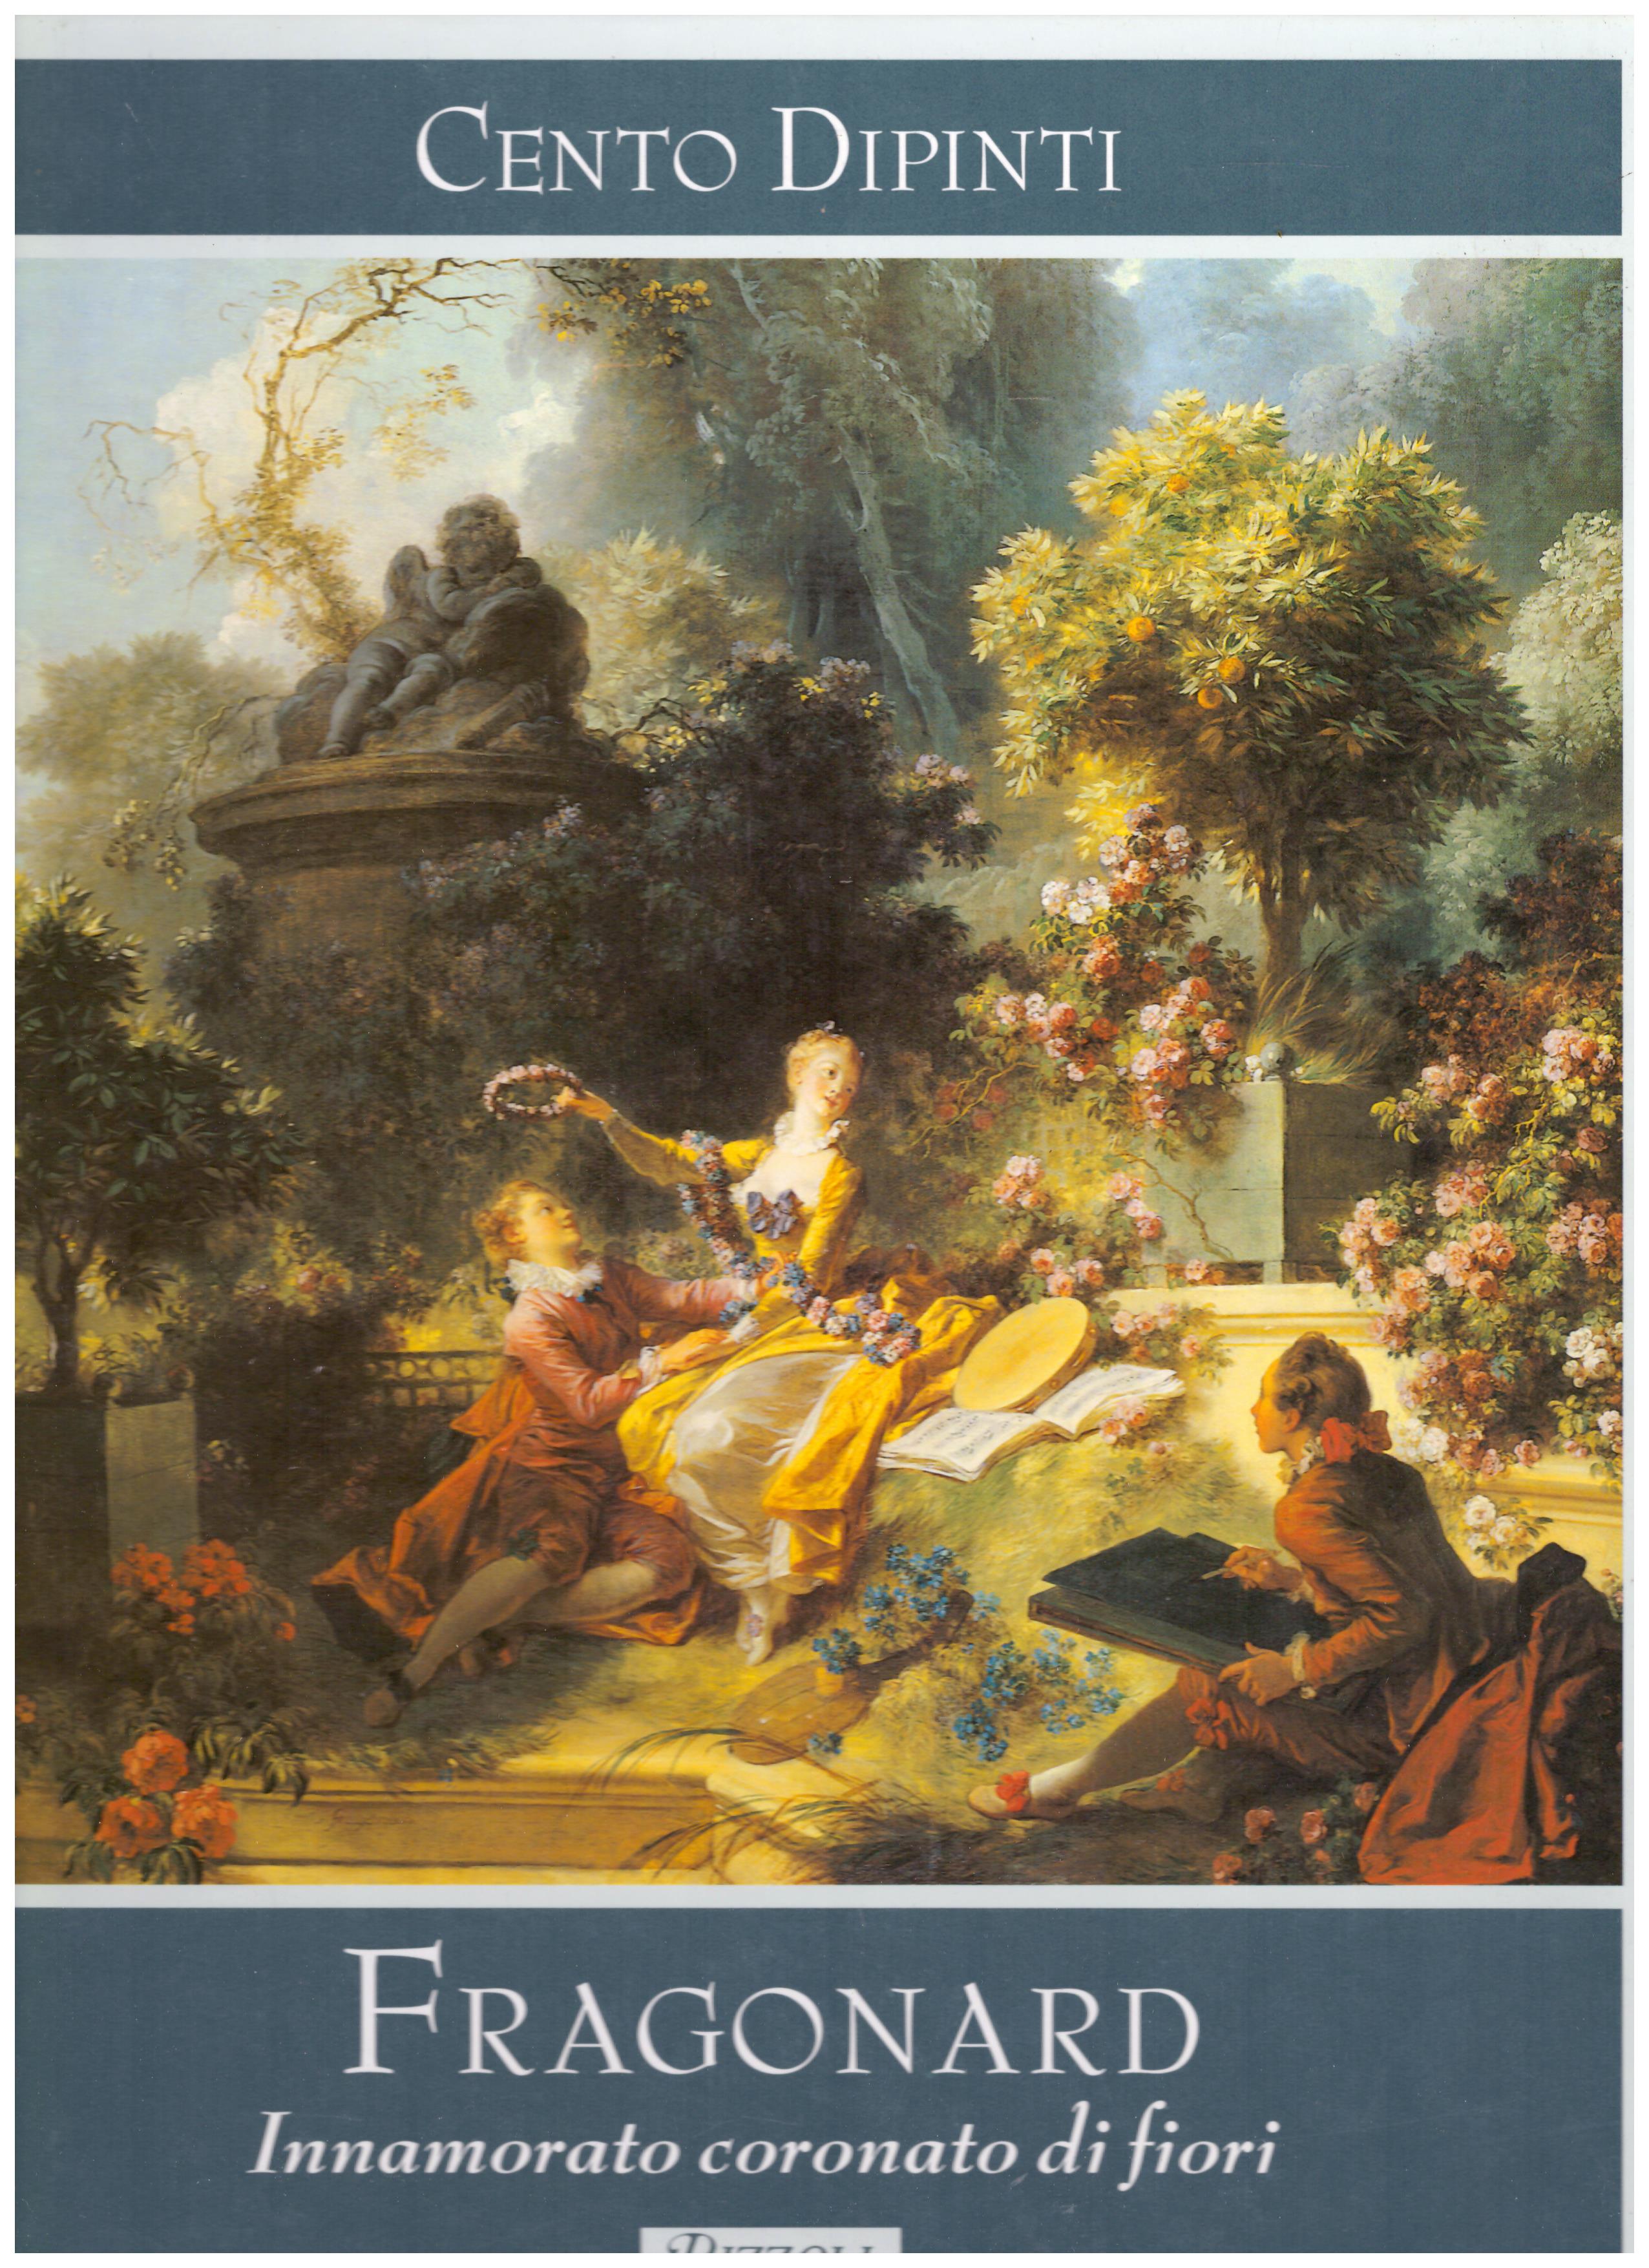 Titolo: Cento Dipinti, Fragonard, Innamorato coronato di fiori Autore : AA.VV.  Editore: Rizzoli